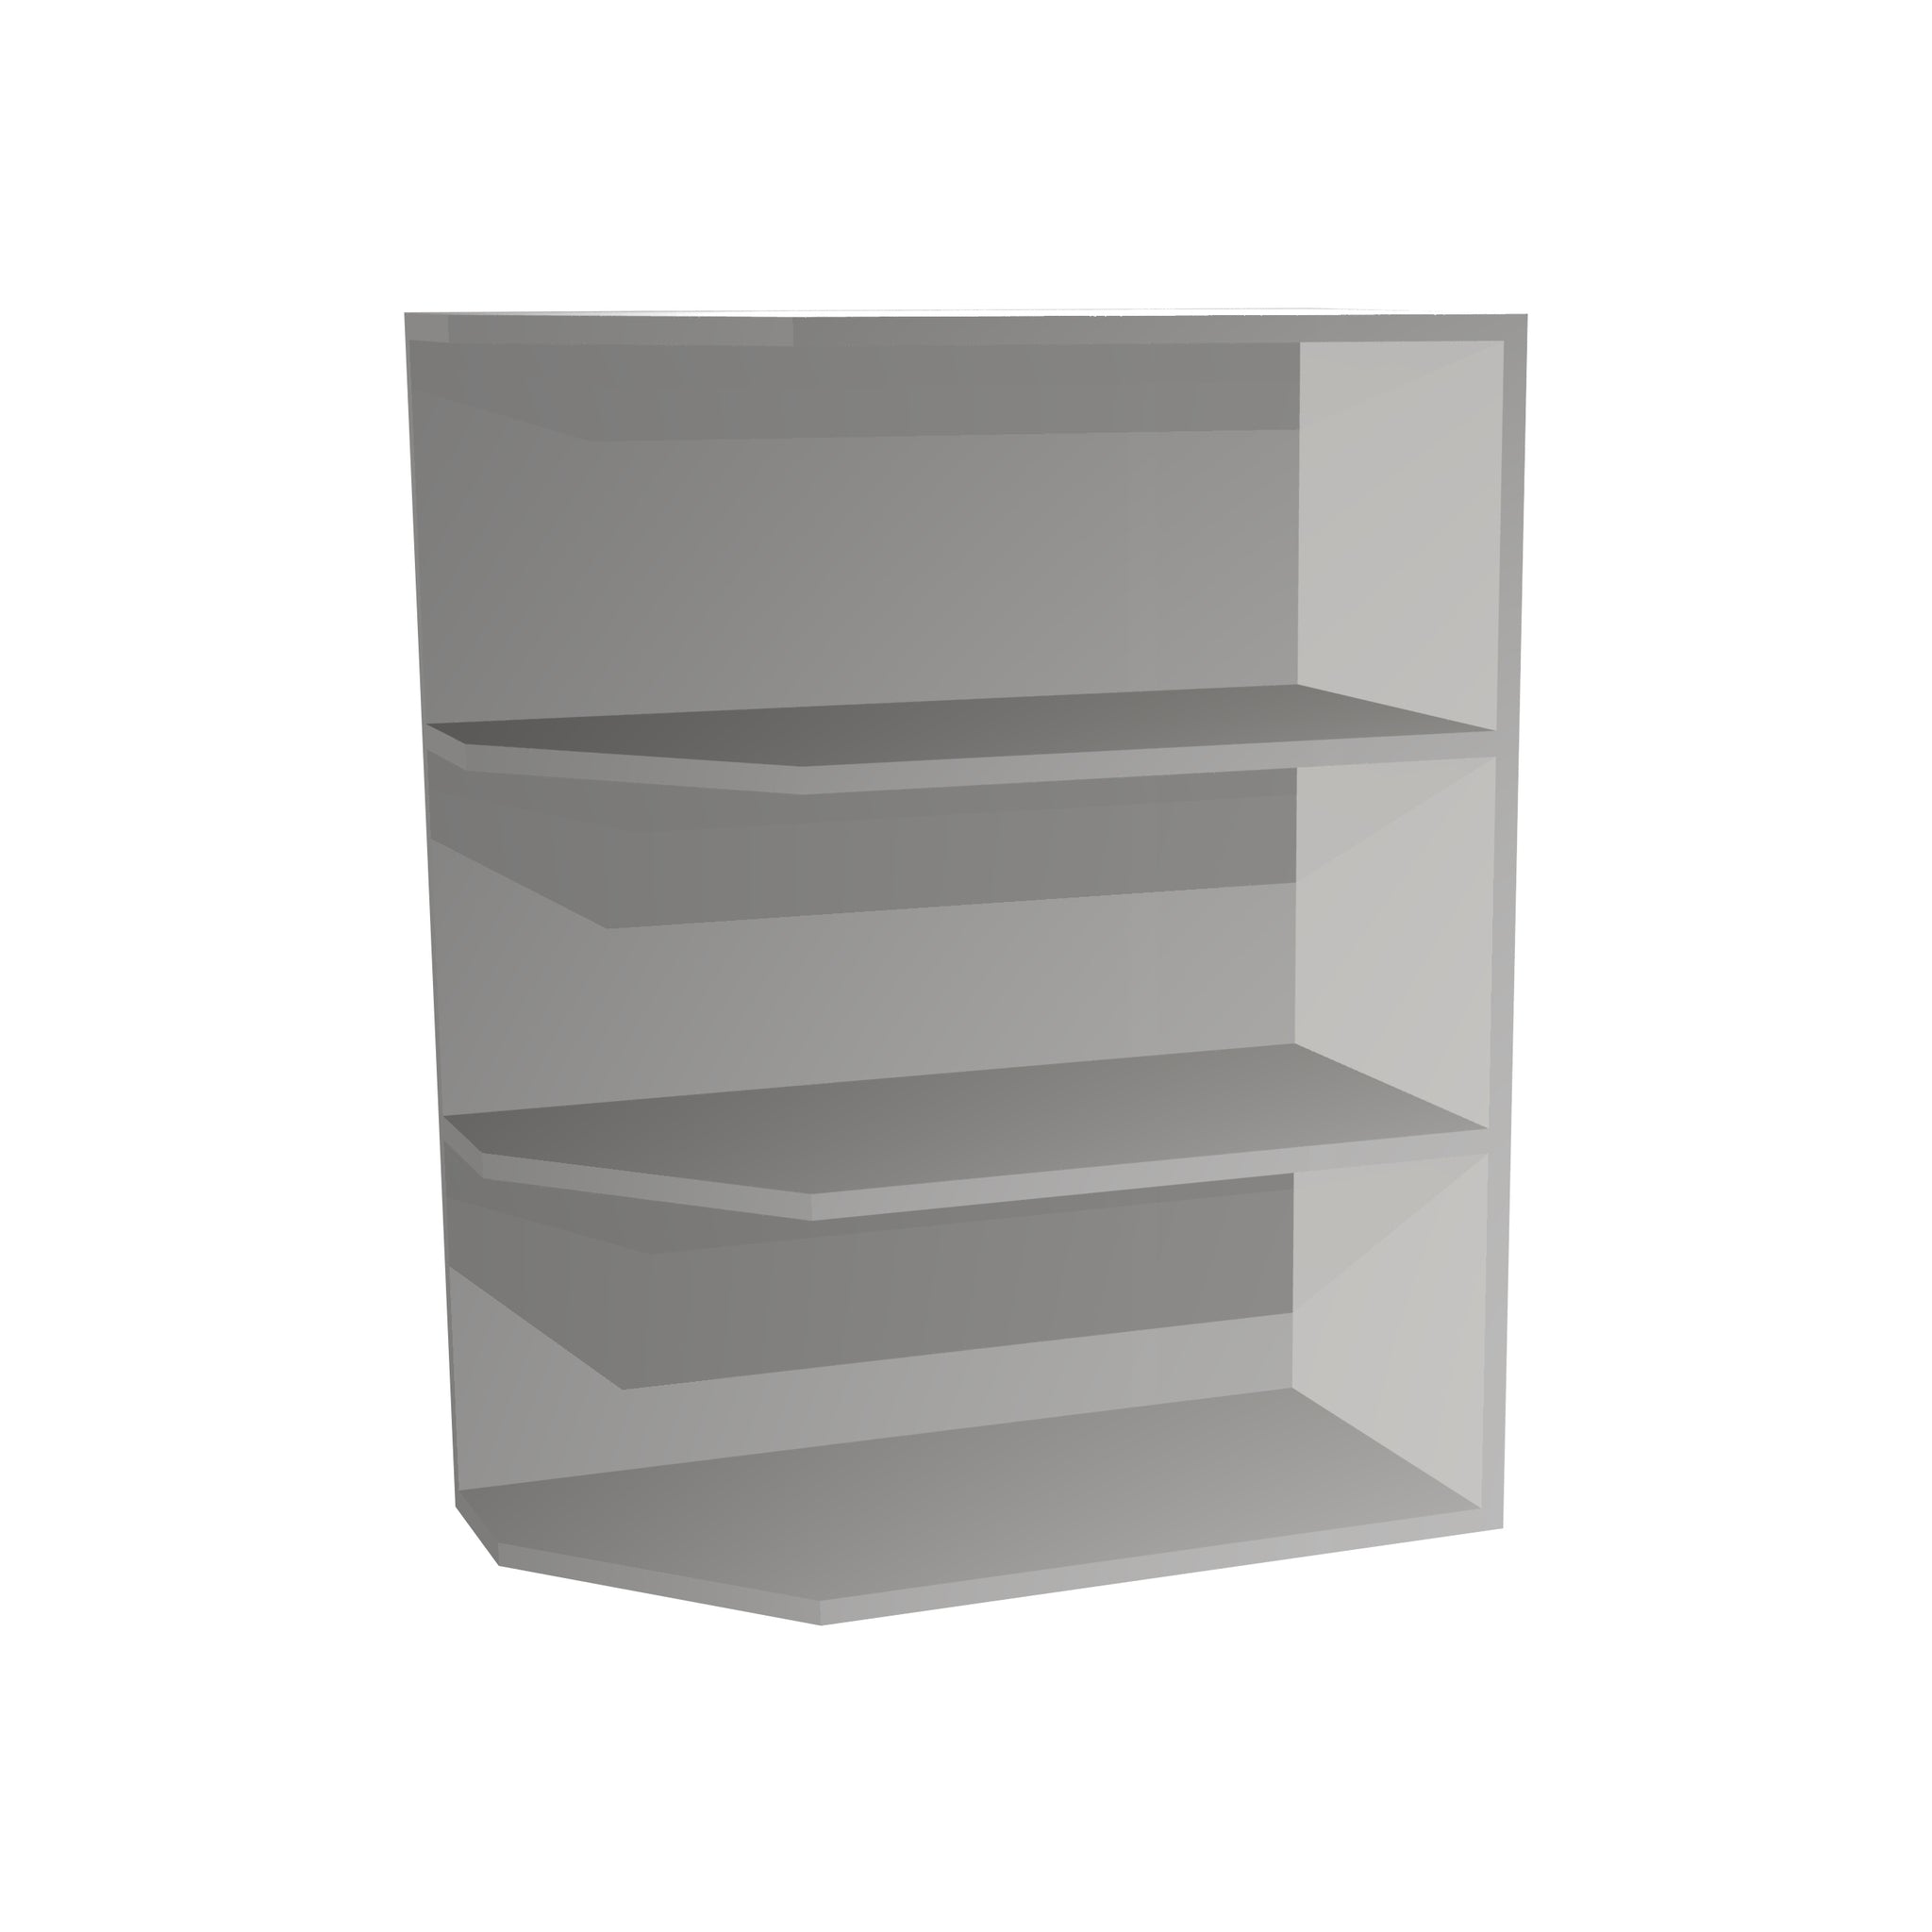 RTA - Lacquer White - Base End Shelf Cabinet | 12"W x 30"H x 12"D